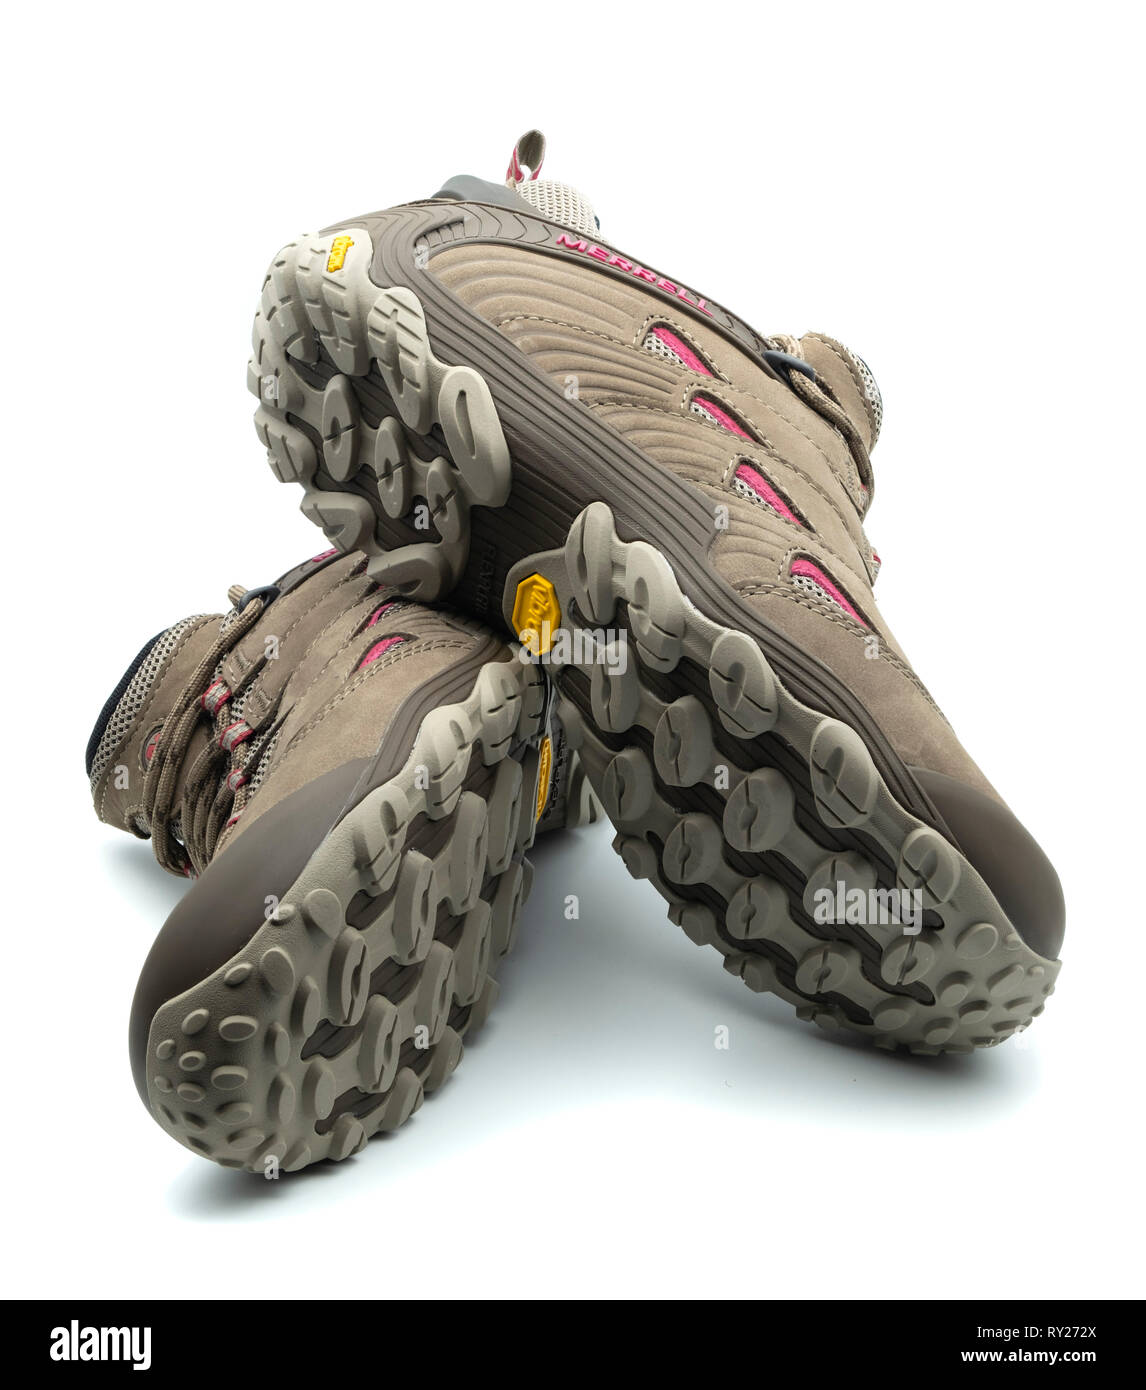 Une paire de chaussures de randonnée Merrell brown avec semelles Vibram isolé sur fond blanc Banque D'Images